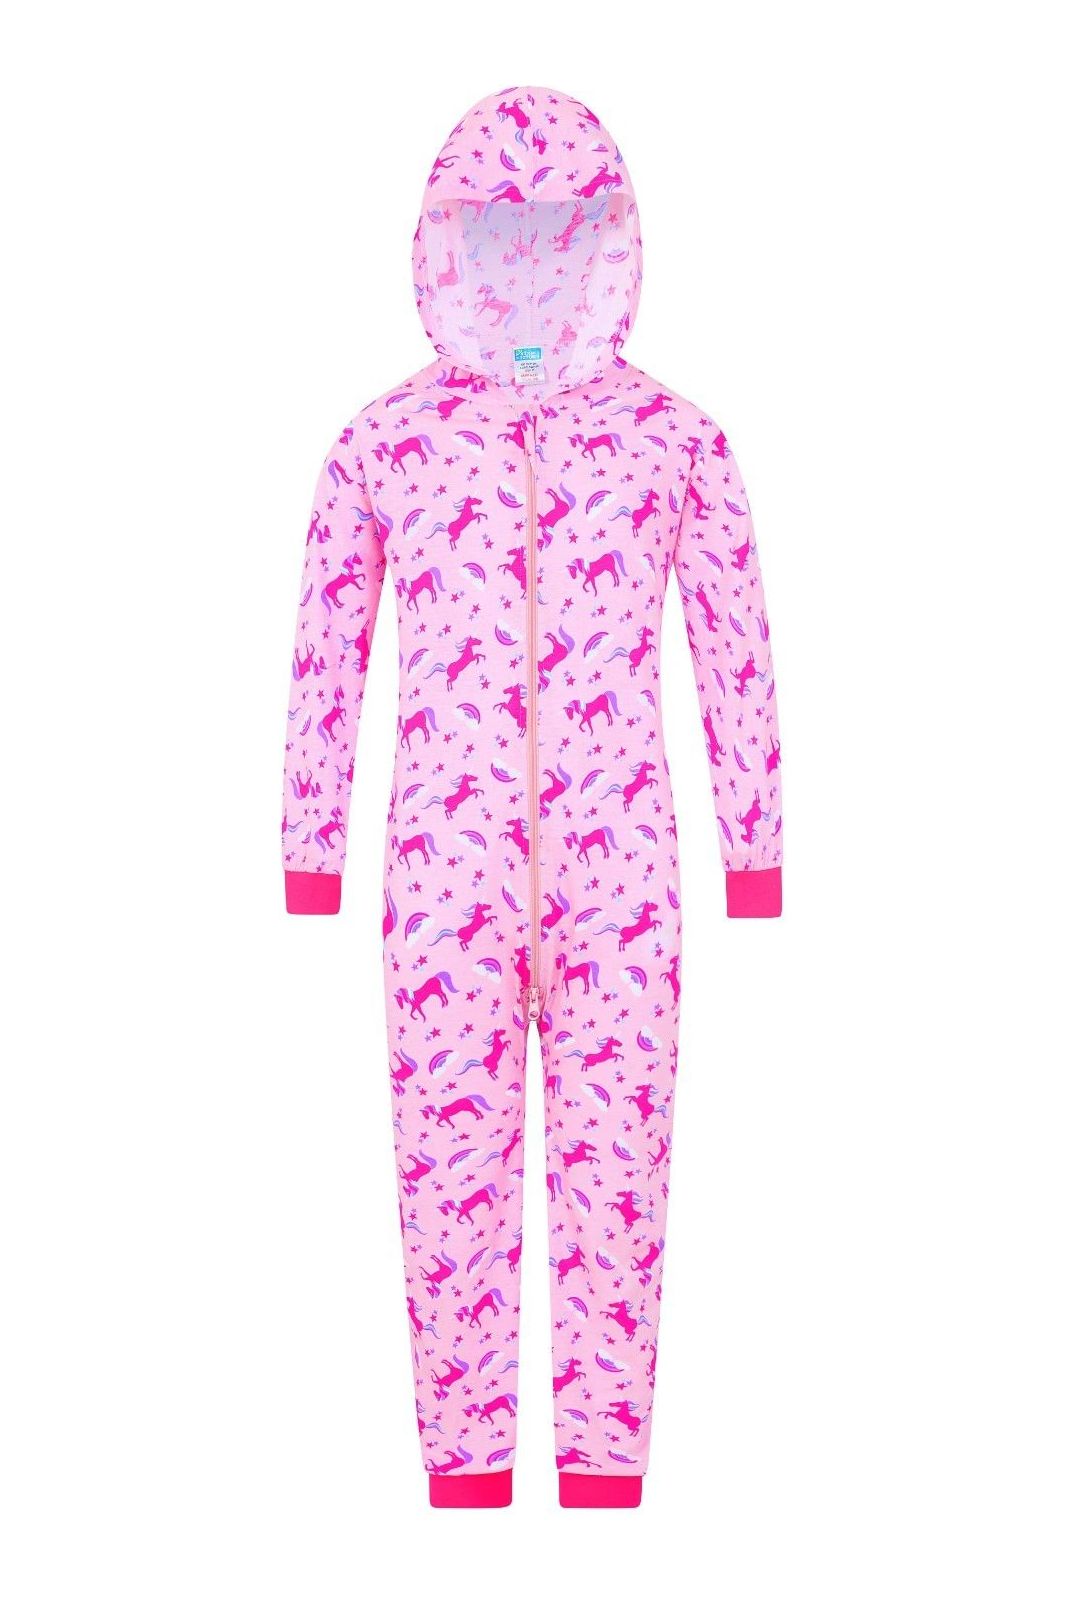 Girls Pink Unicorn Onesie - Pyjamas.com